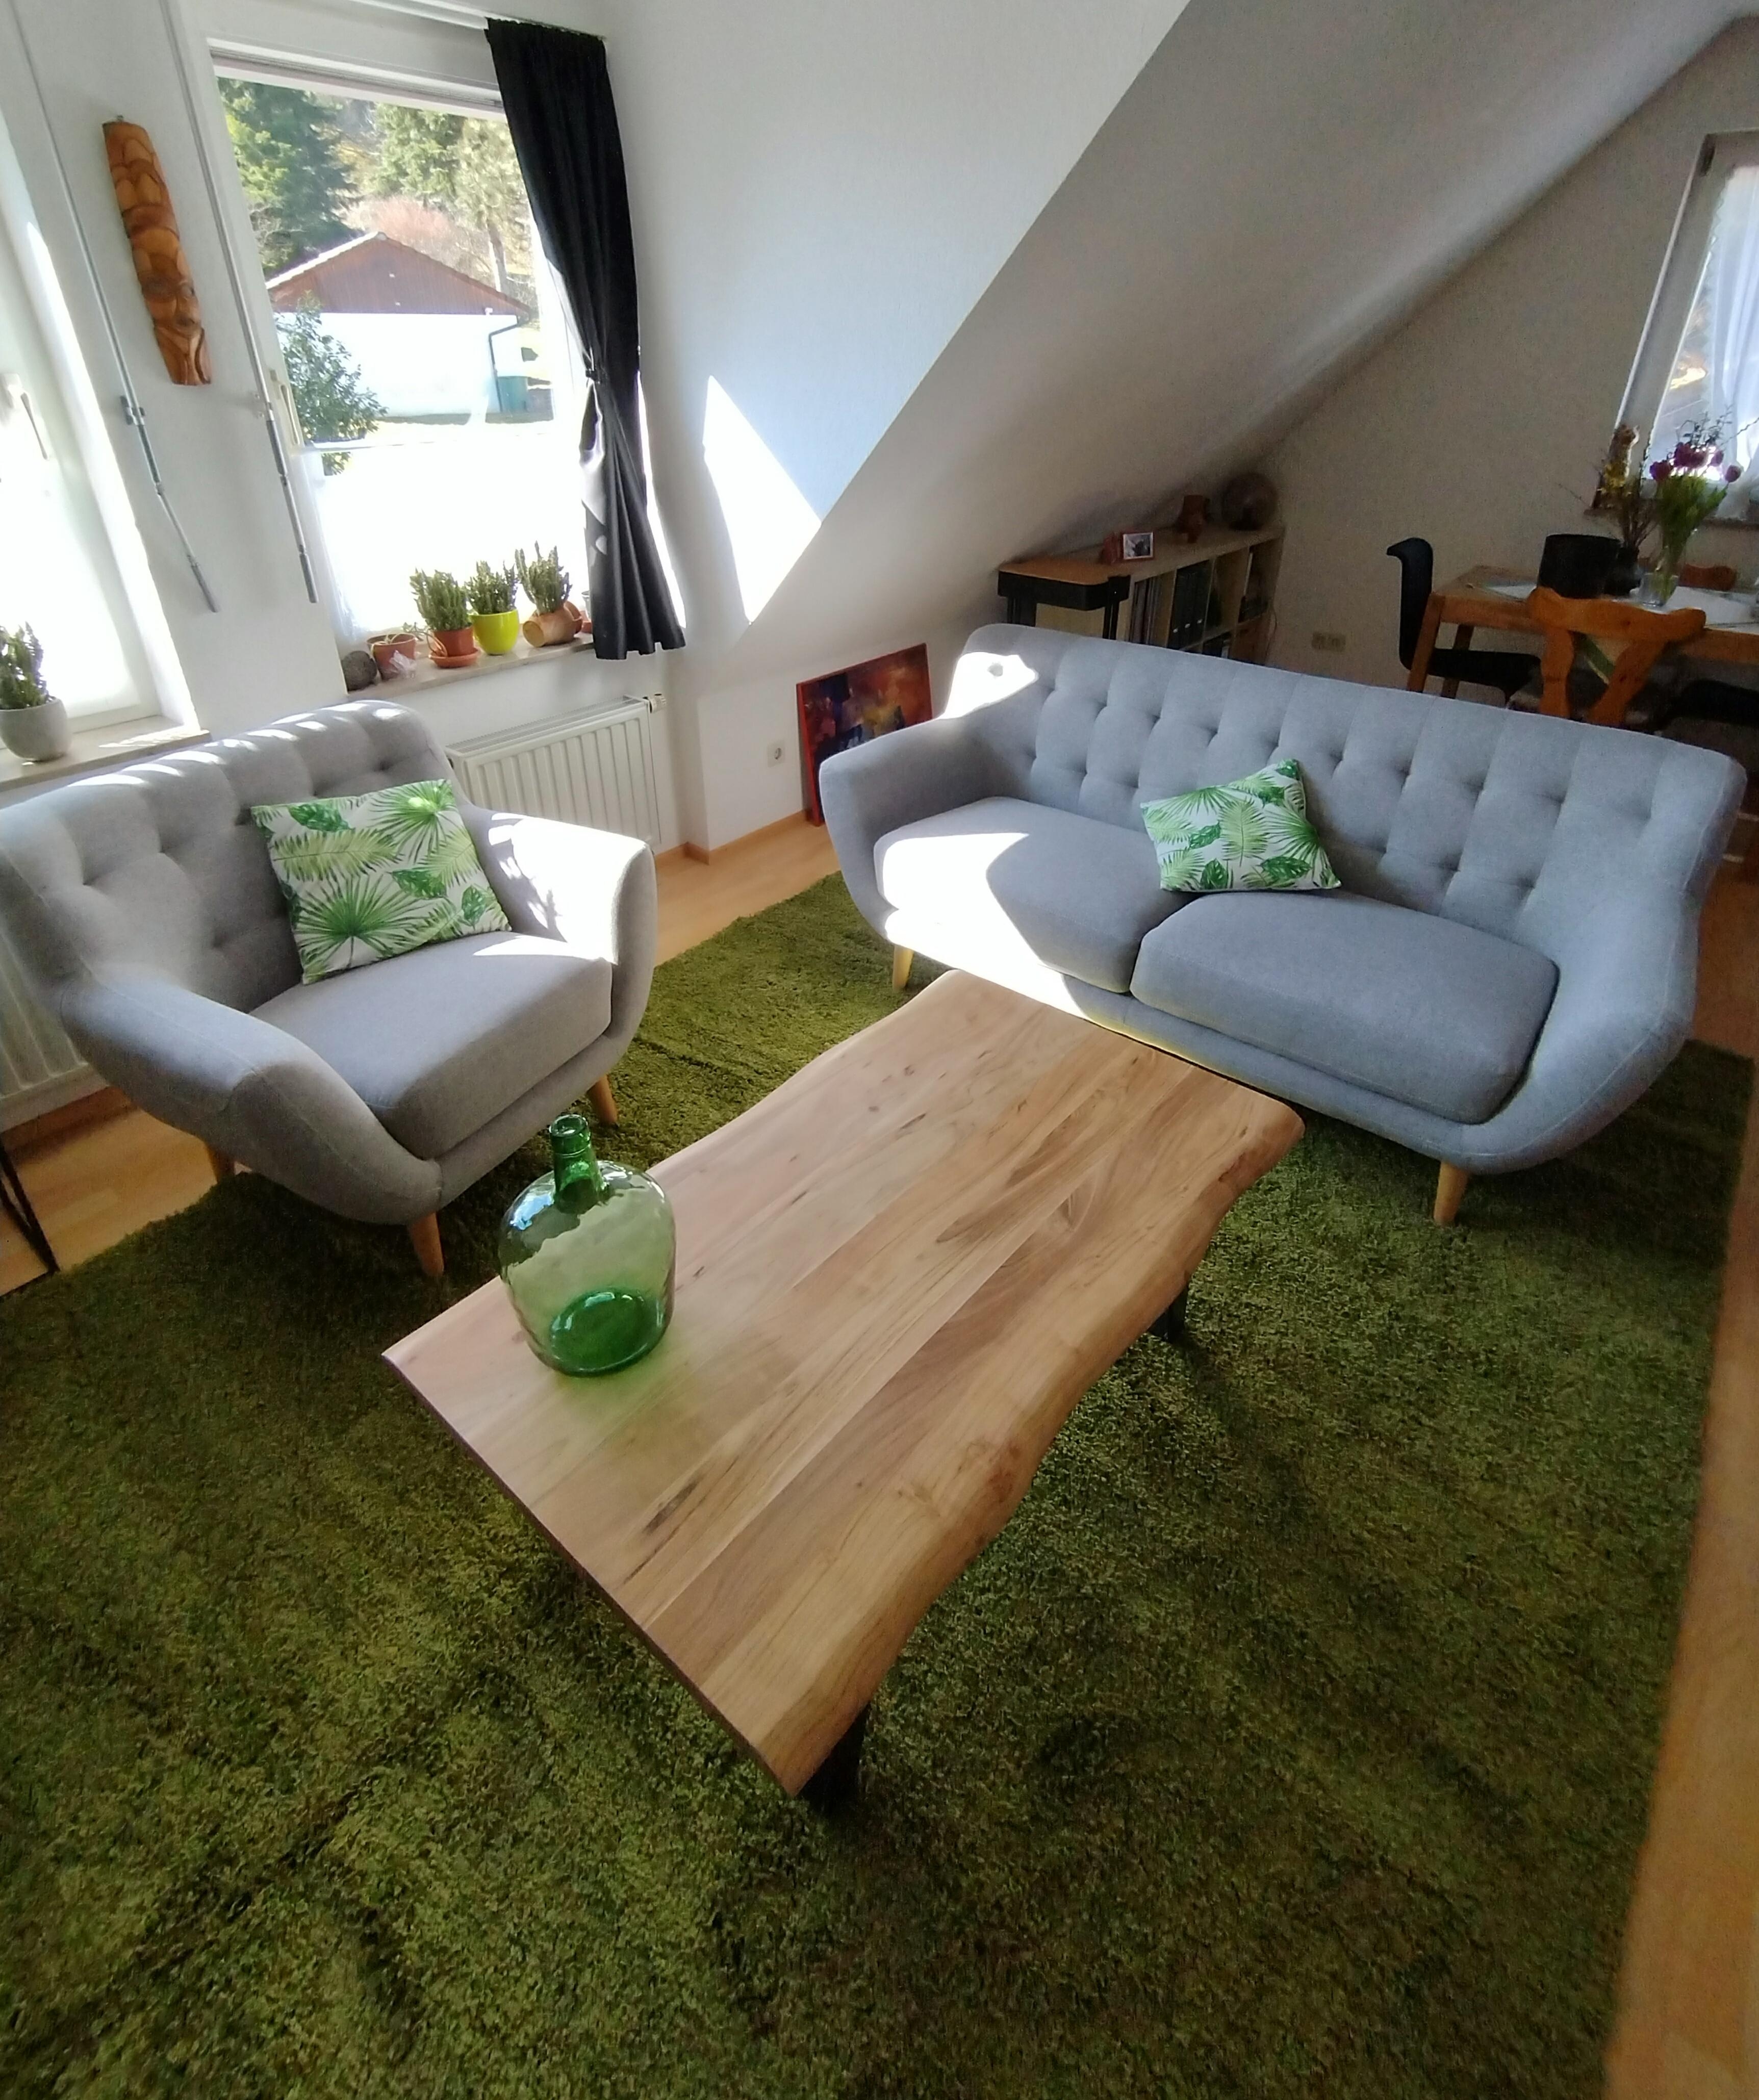 💚
#wohnzimmer #makeover #sessel #sofa #couchtisch #teppich #grün